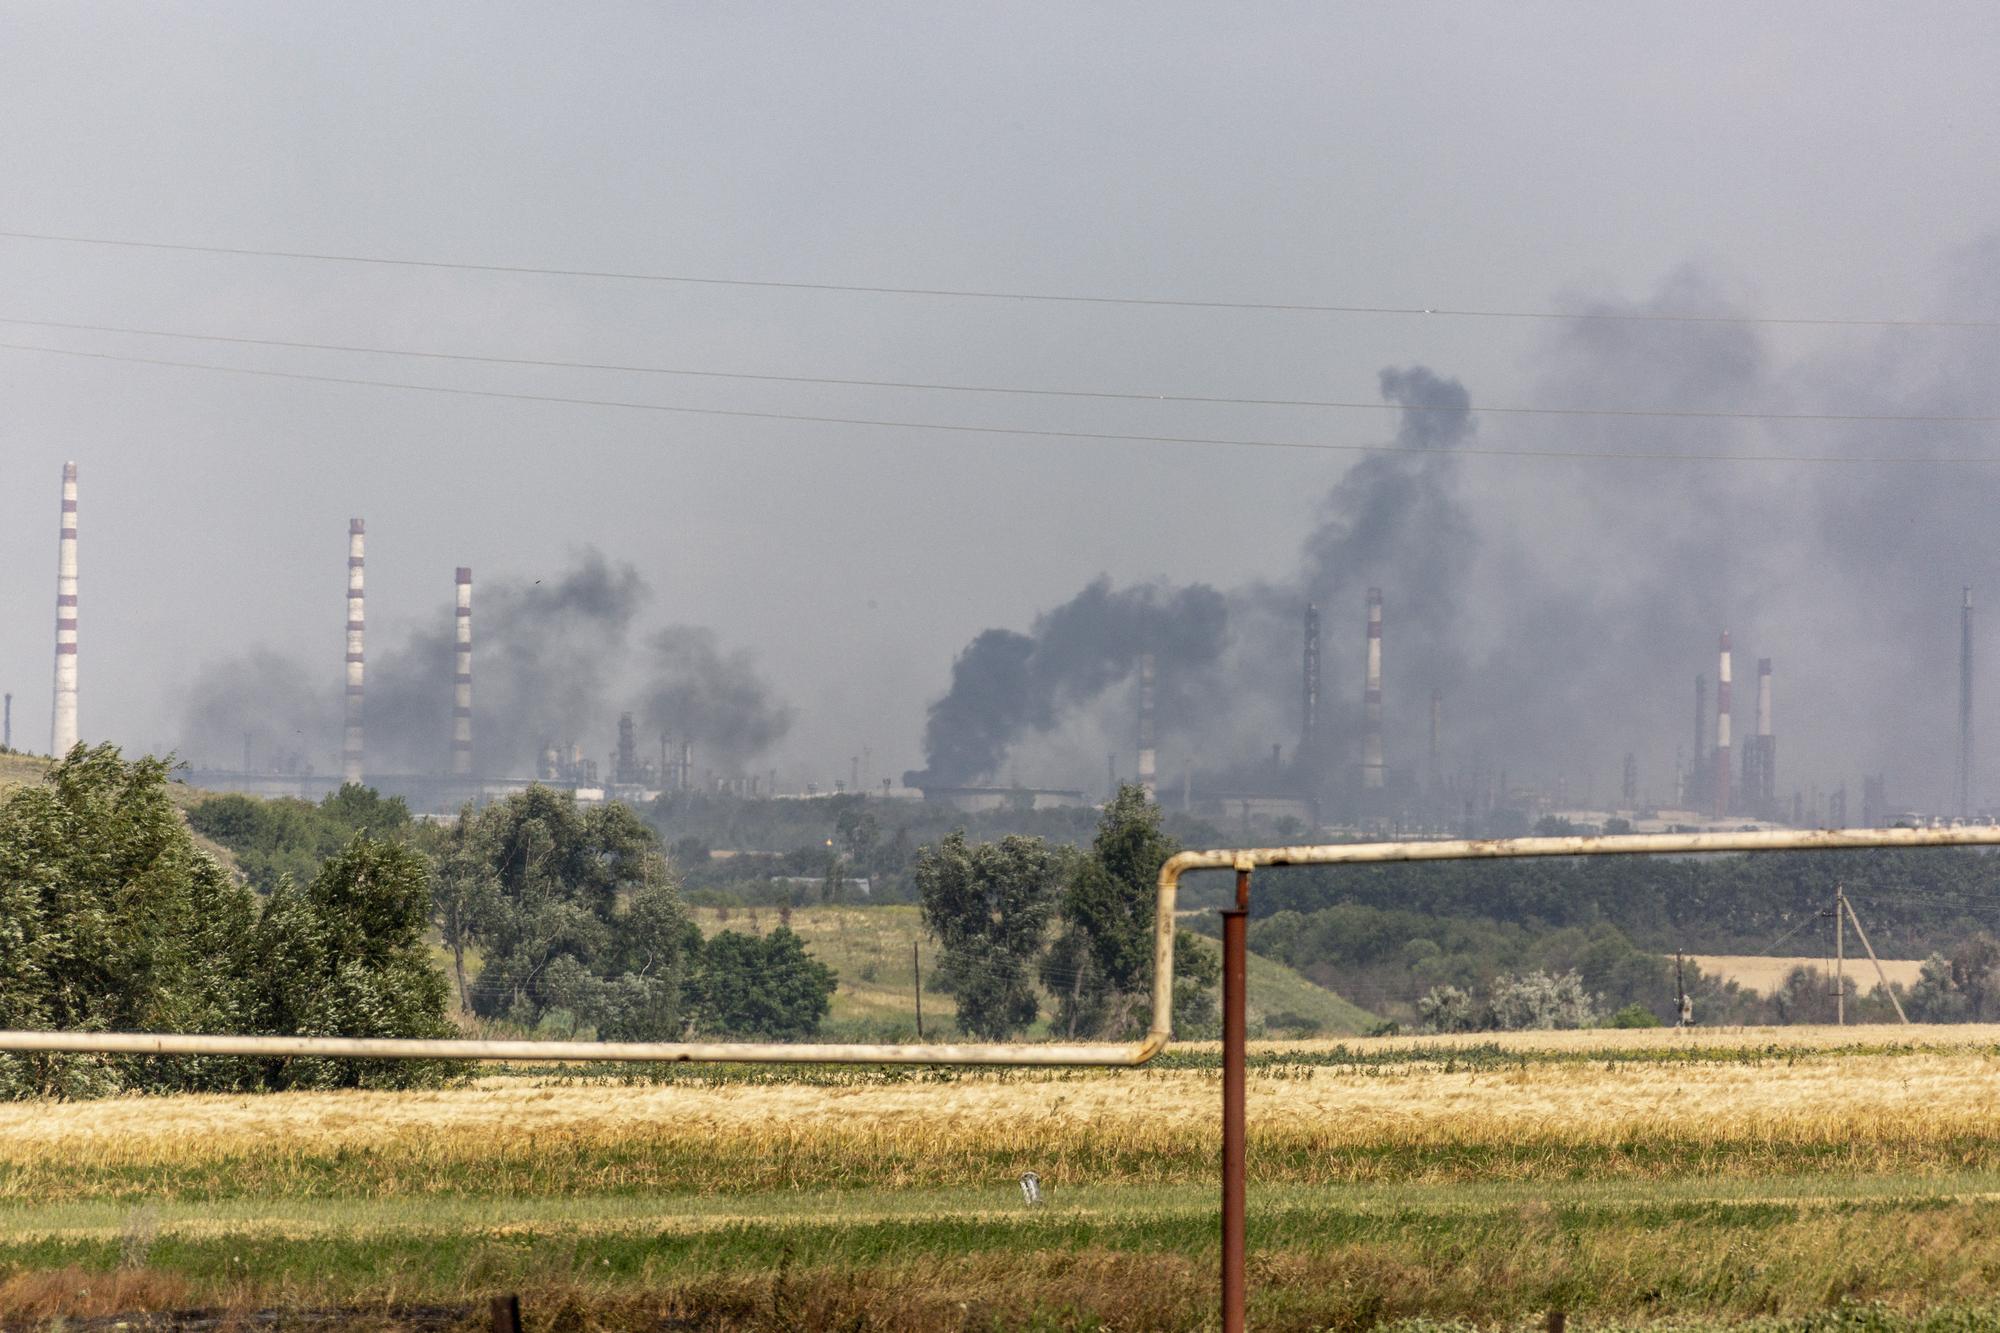 Des nuages de fumées attestent de combats violents entre troupes ukrainiennes et russes autour de la ville de Lyssytchansk, dans l'est de l'Ukraine, le 1er juillet 2022. [Anadolu Agency/AFP - Narciso Contreras]